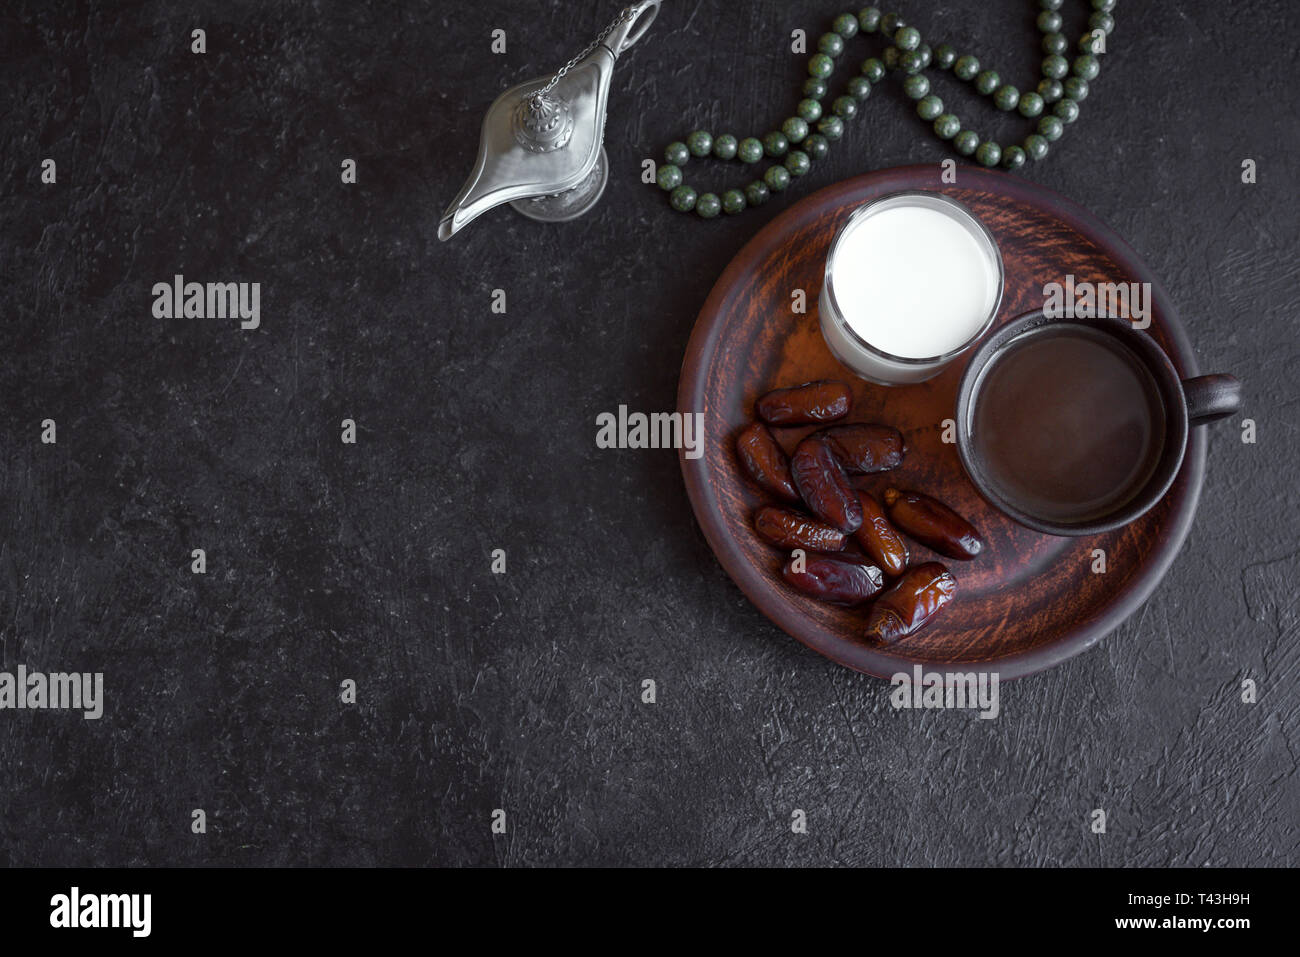 Musulmano tradizionale Iftar cibo sul nero, copia dello spazio. Il Ramadan kareem con date, latte e caffè. Il Ramadan iftar concetto alimentare con il rosario. Foto Stock